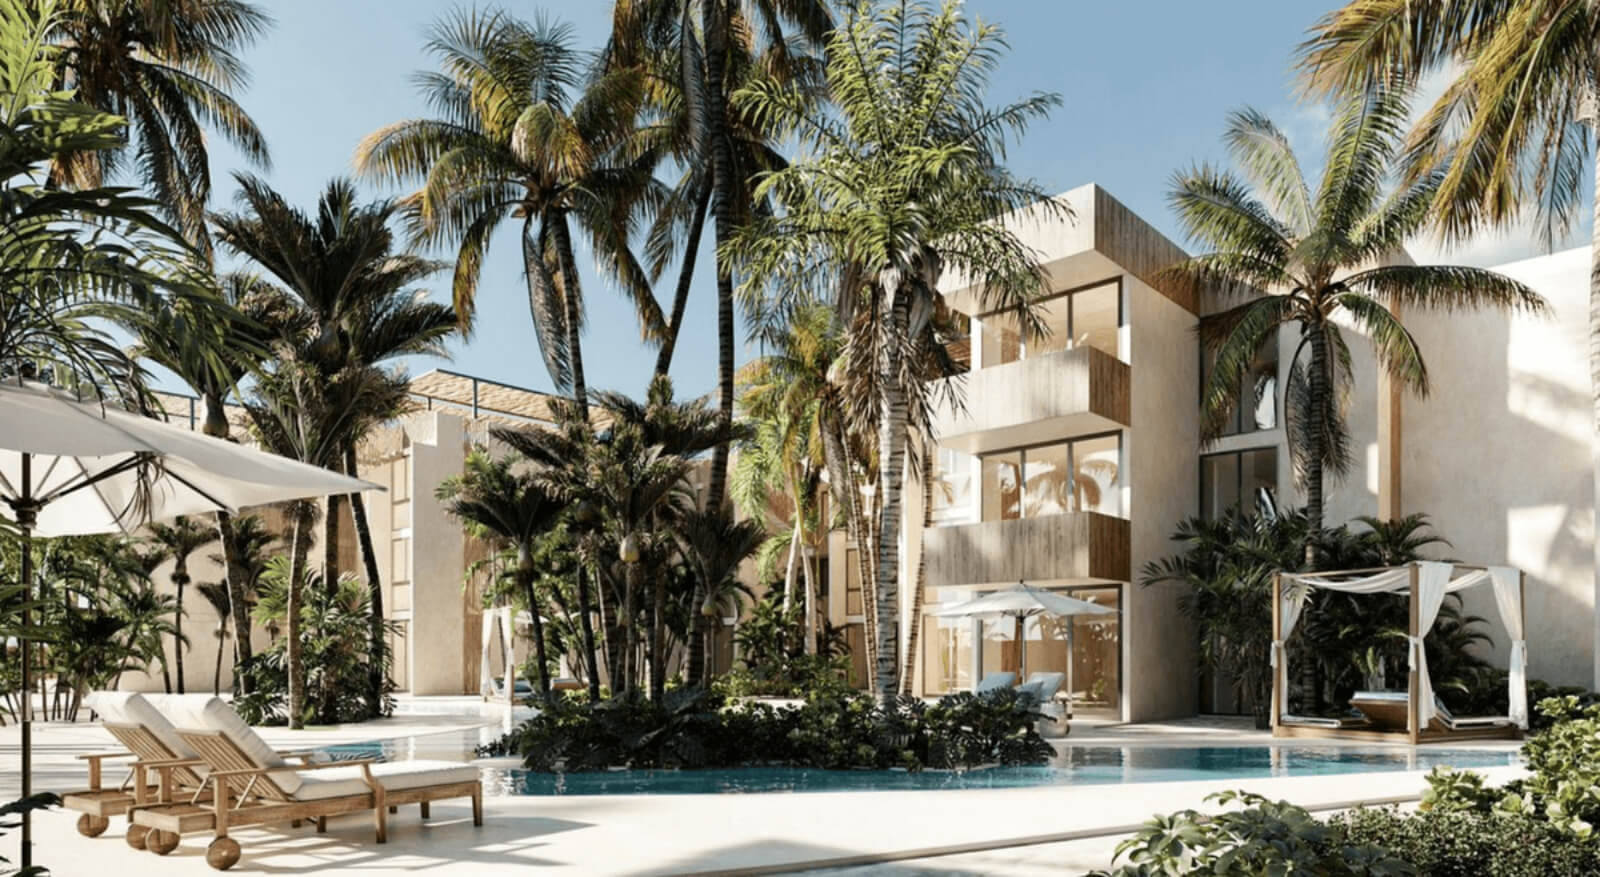 Condominio frente al mar, con alberca, gimnasio, Bar y terraza, venta Yucatan.